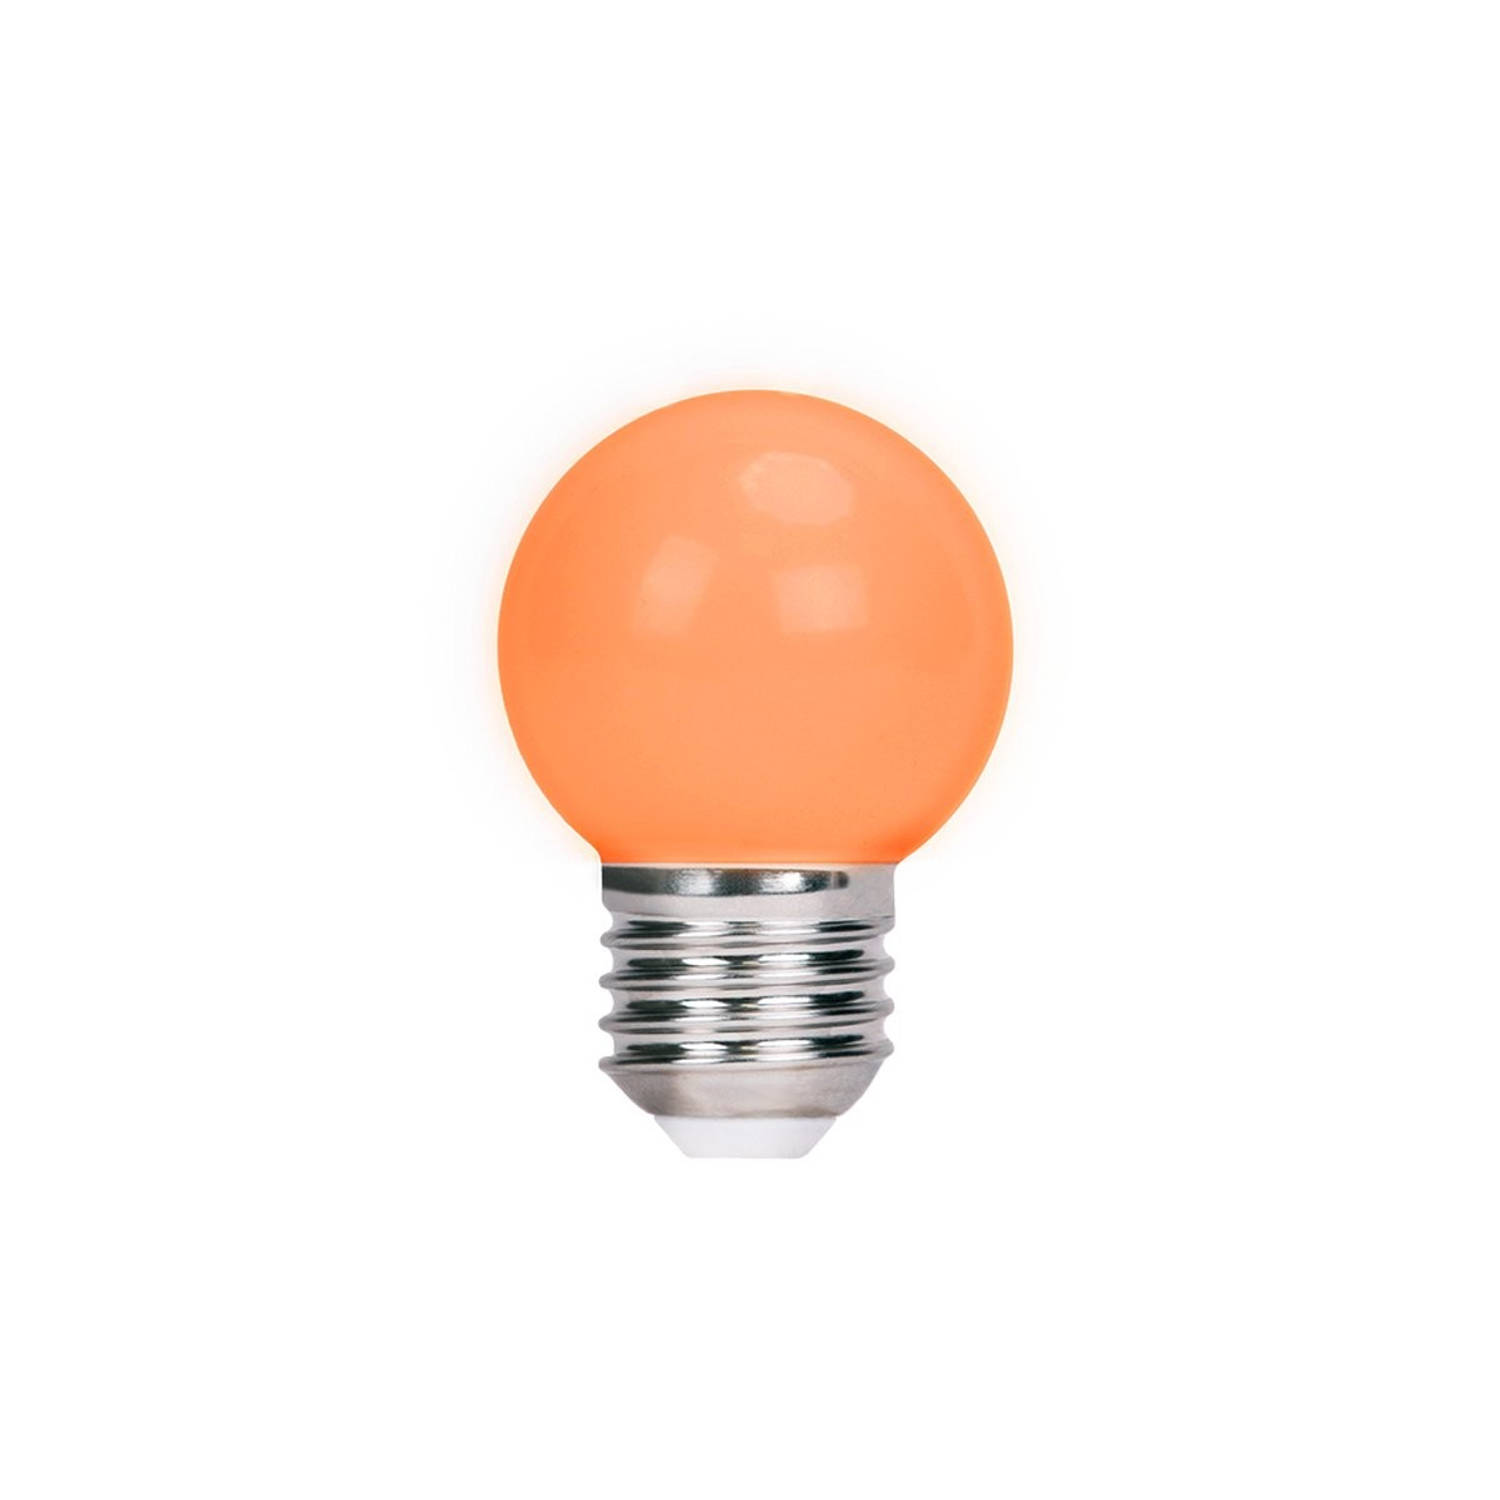 Forever RTV003601 - 5 stuks LED bulb lamp E27 G45 - Oranje